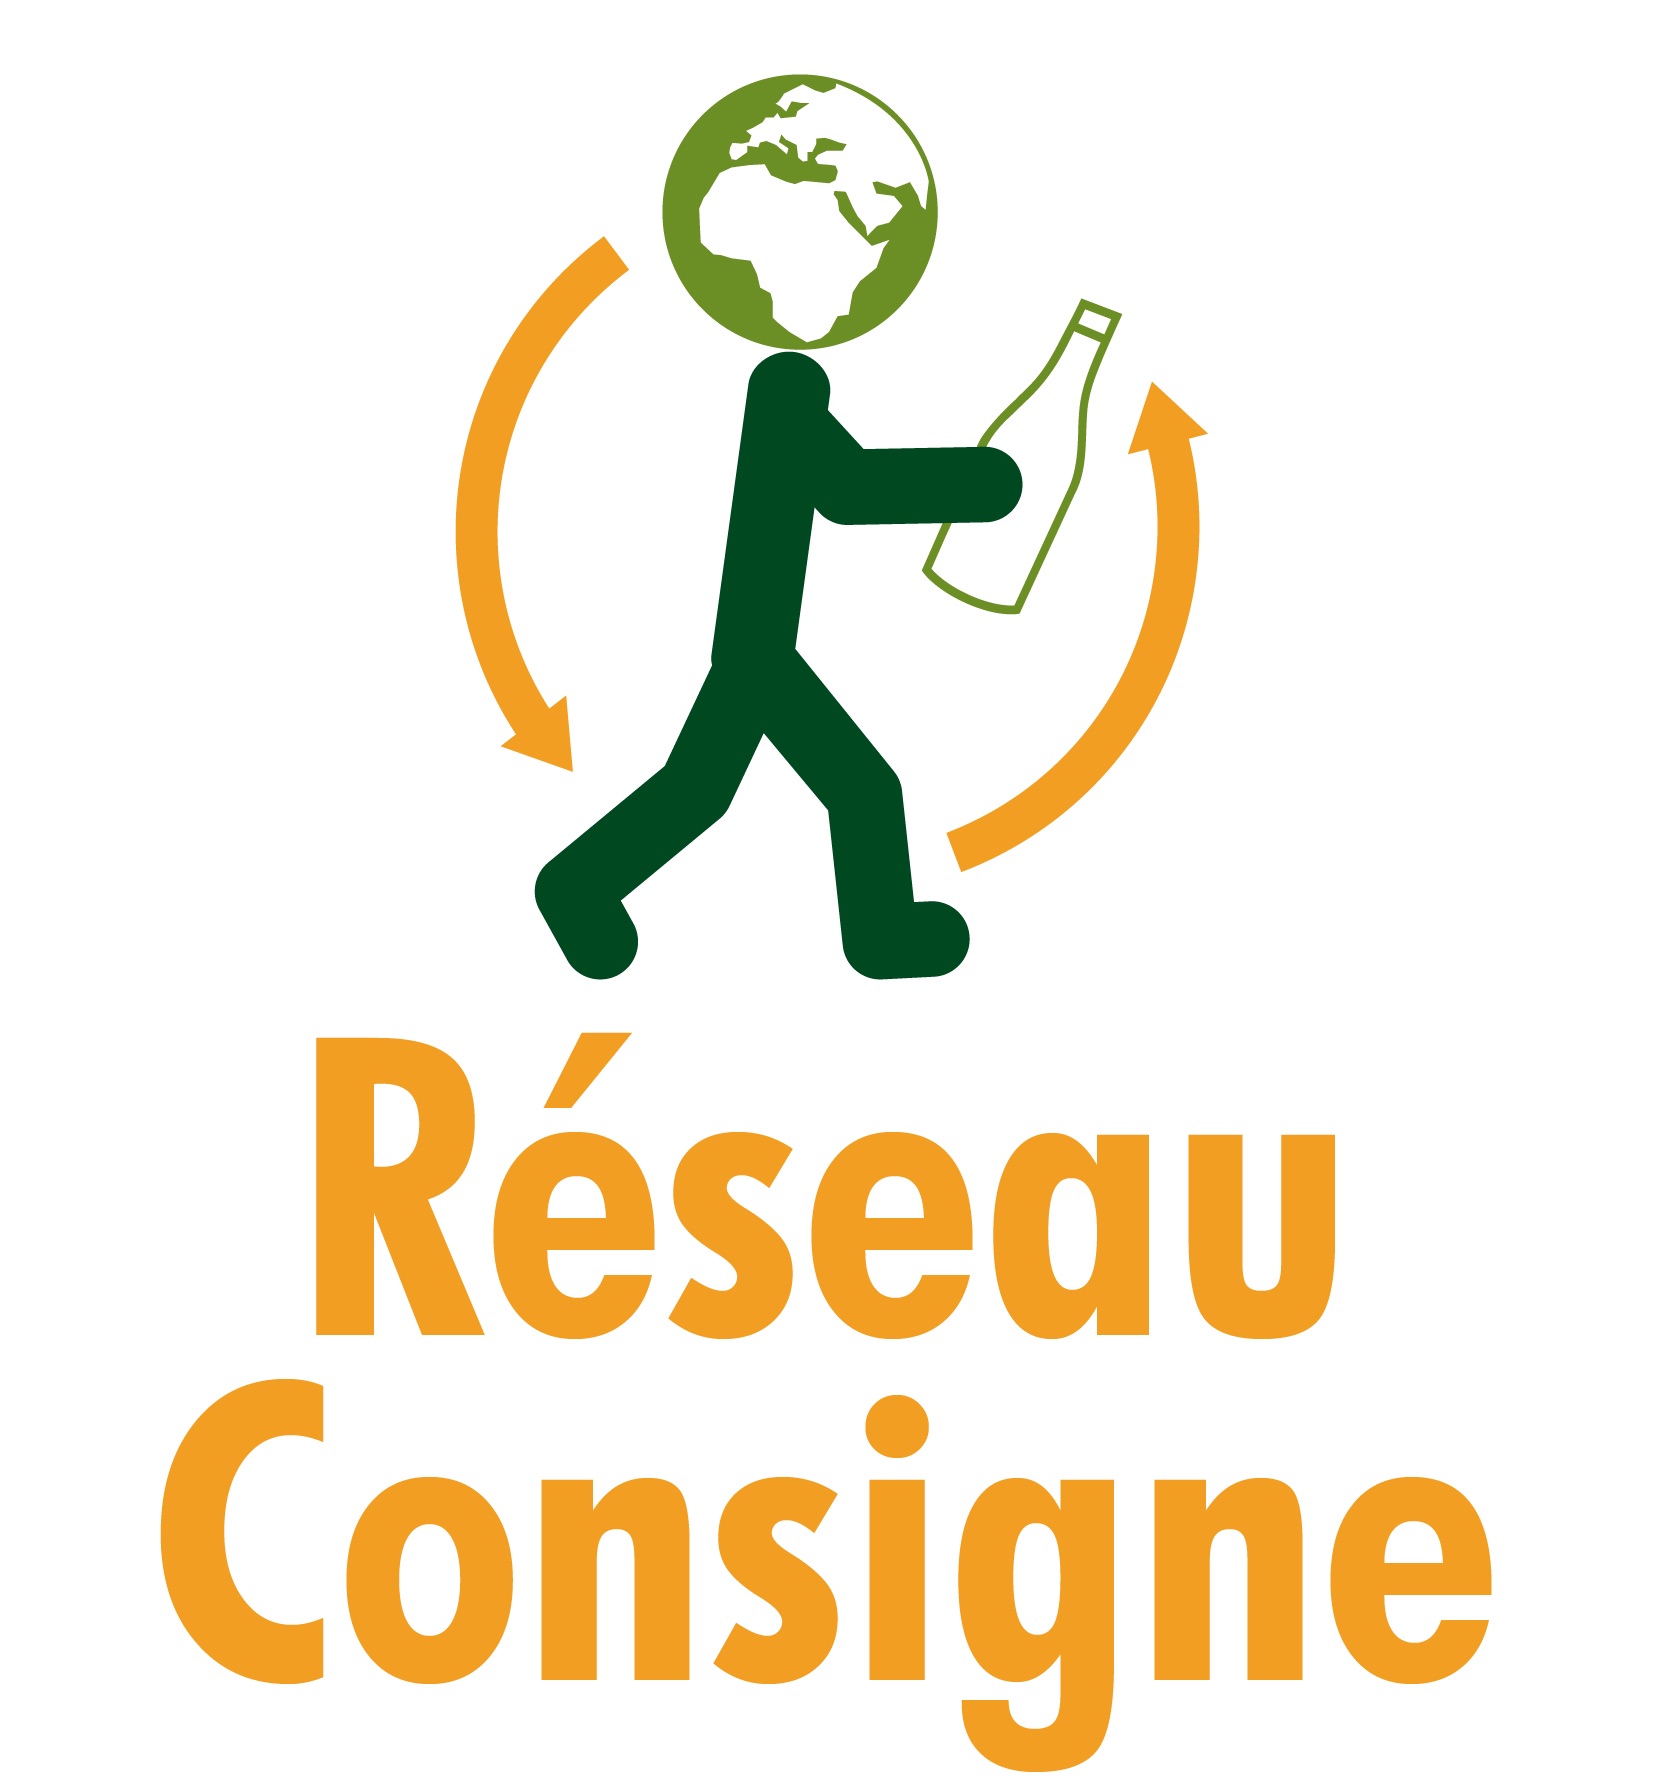 medlem-reseauconsigne_logo